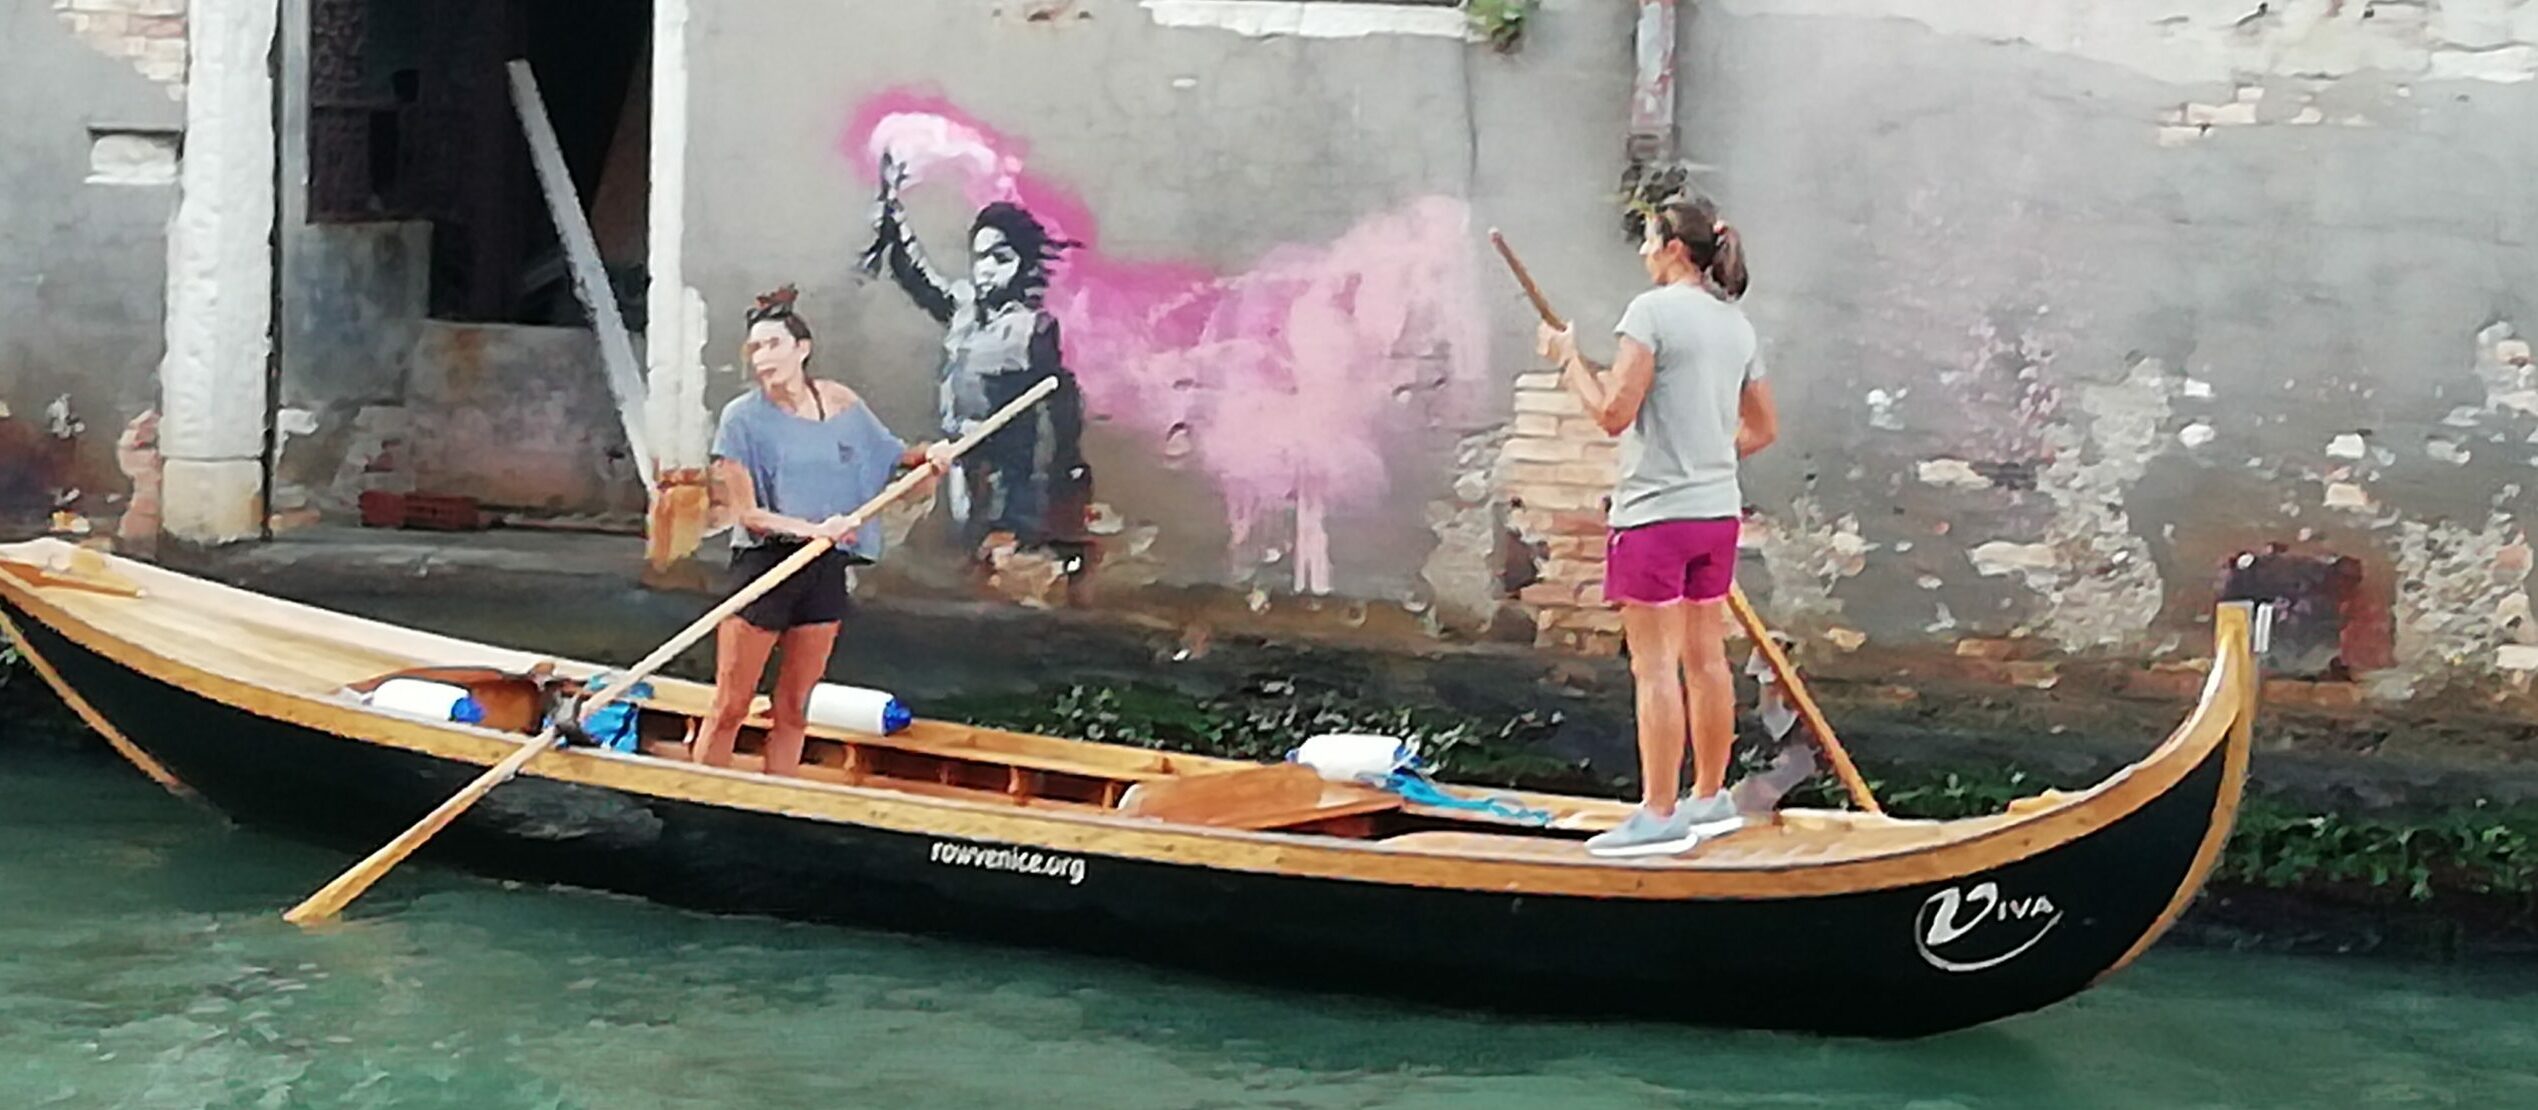 Un tourisme durable pour Venise à travers l'Art Urbain de Banksy